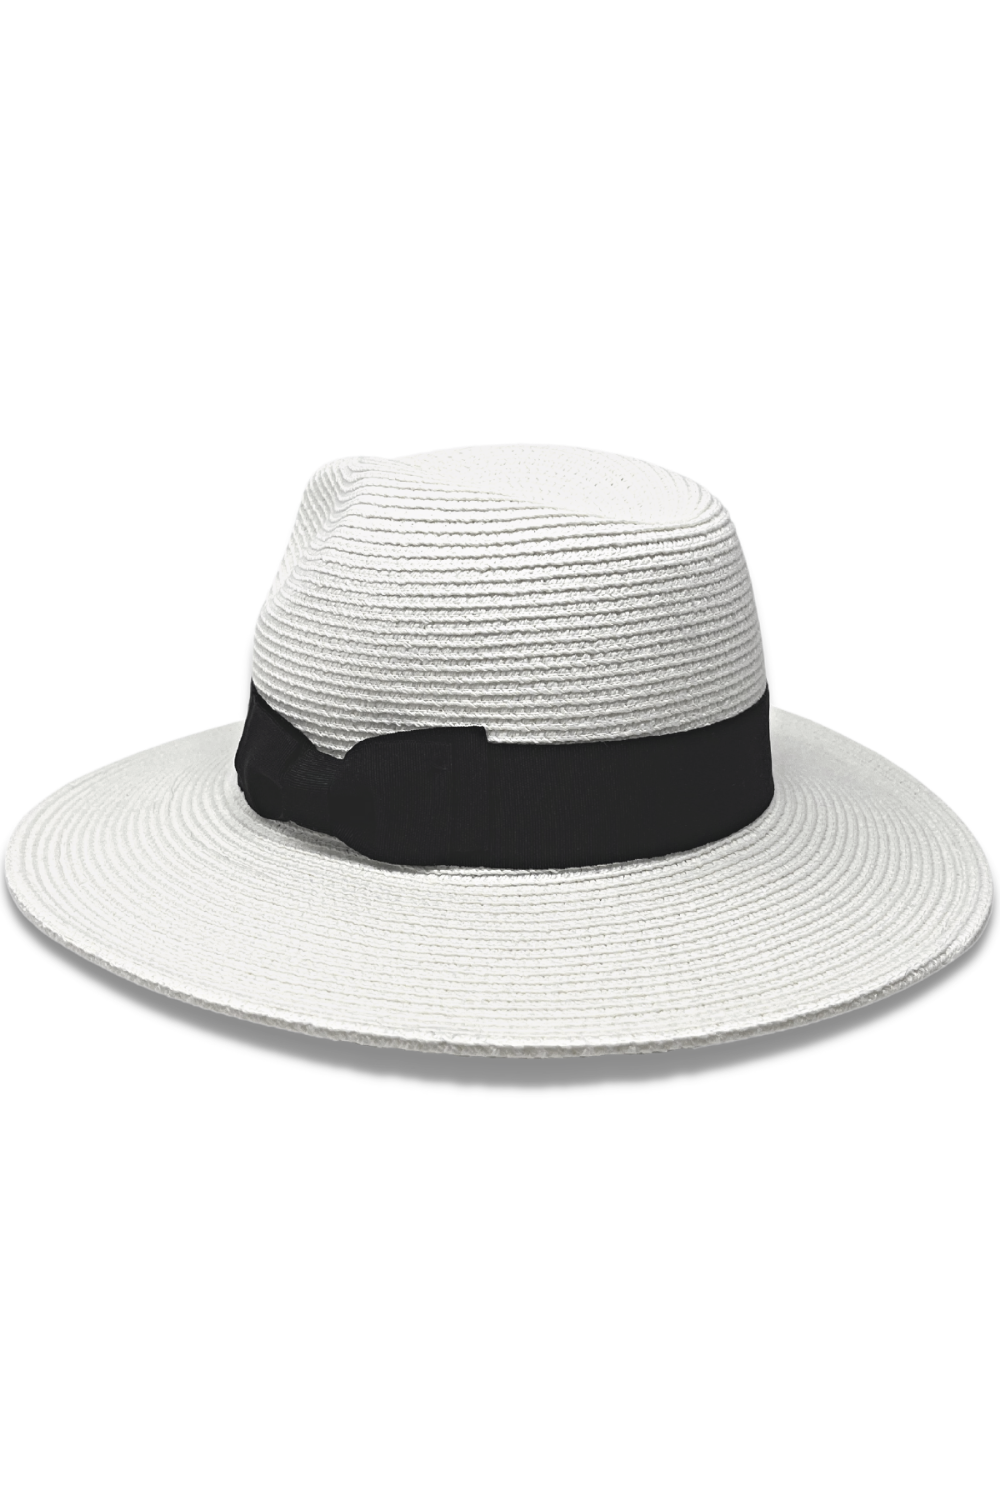 Unisex Men's & Women's UV Hat UPF 50+ for sun protection Coolibar Golf –  KER SUN